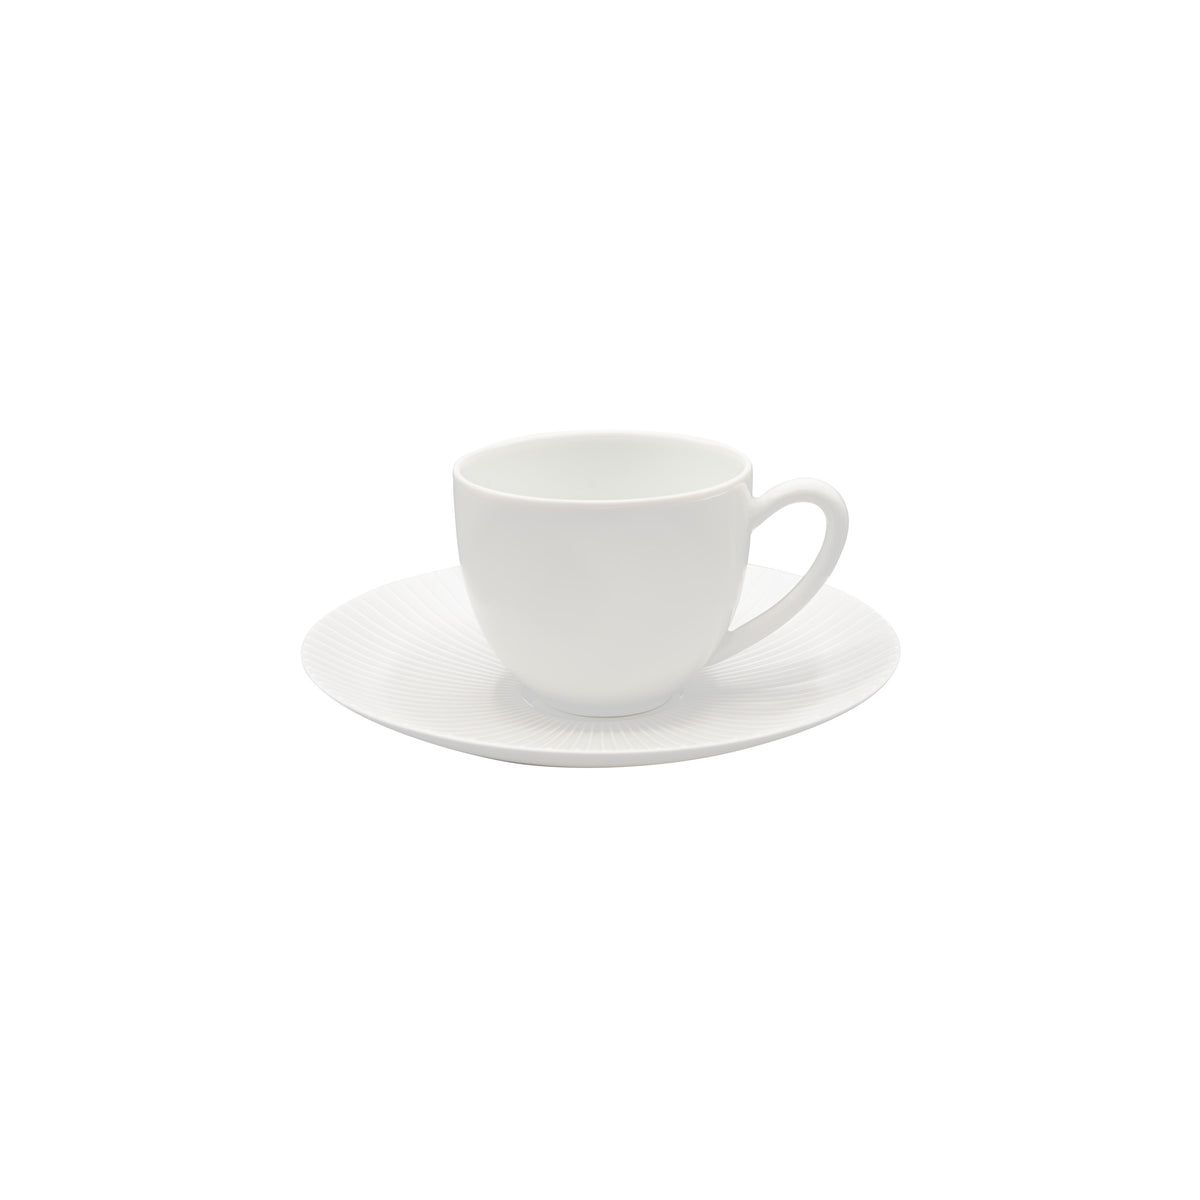 BOLERO White satin - Coffee cup